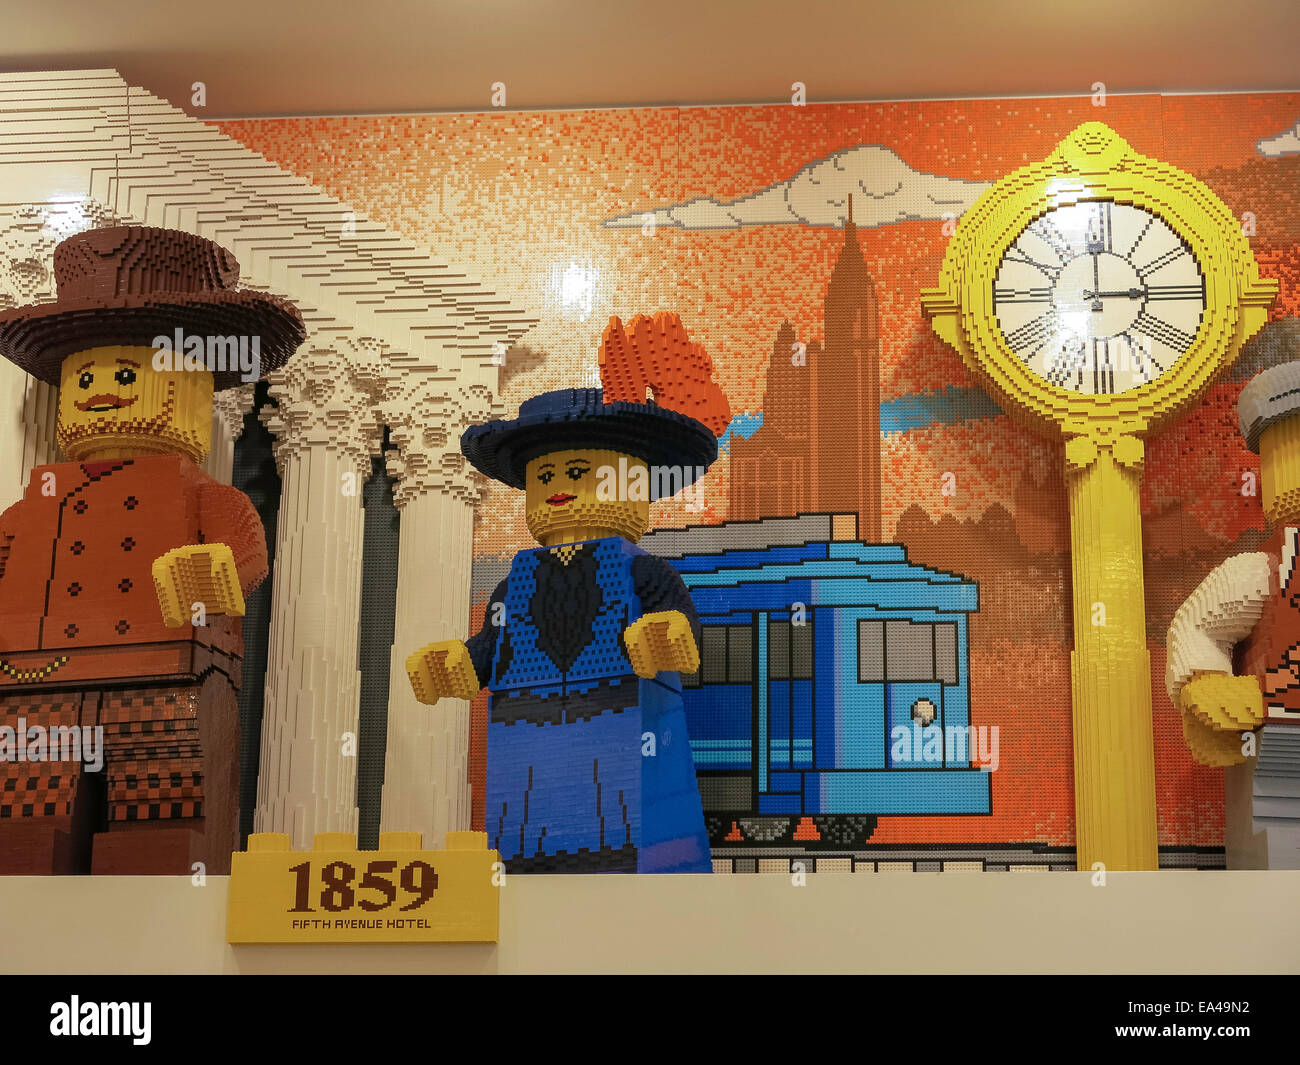 Le LEGO Store, quartier Flatiron, NYC Banque D'Images